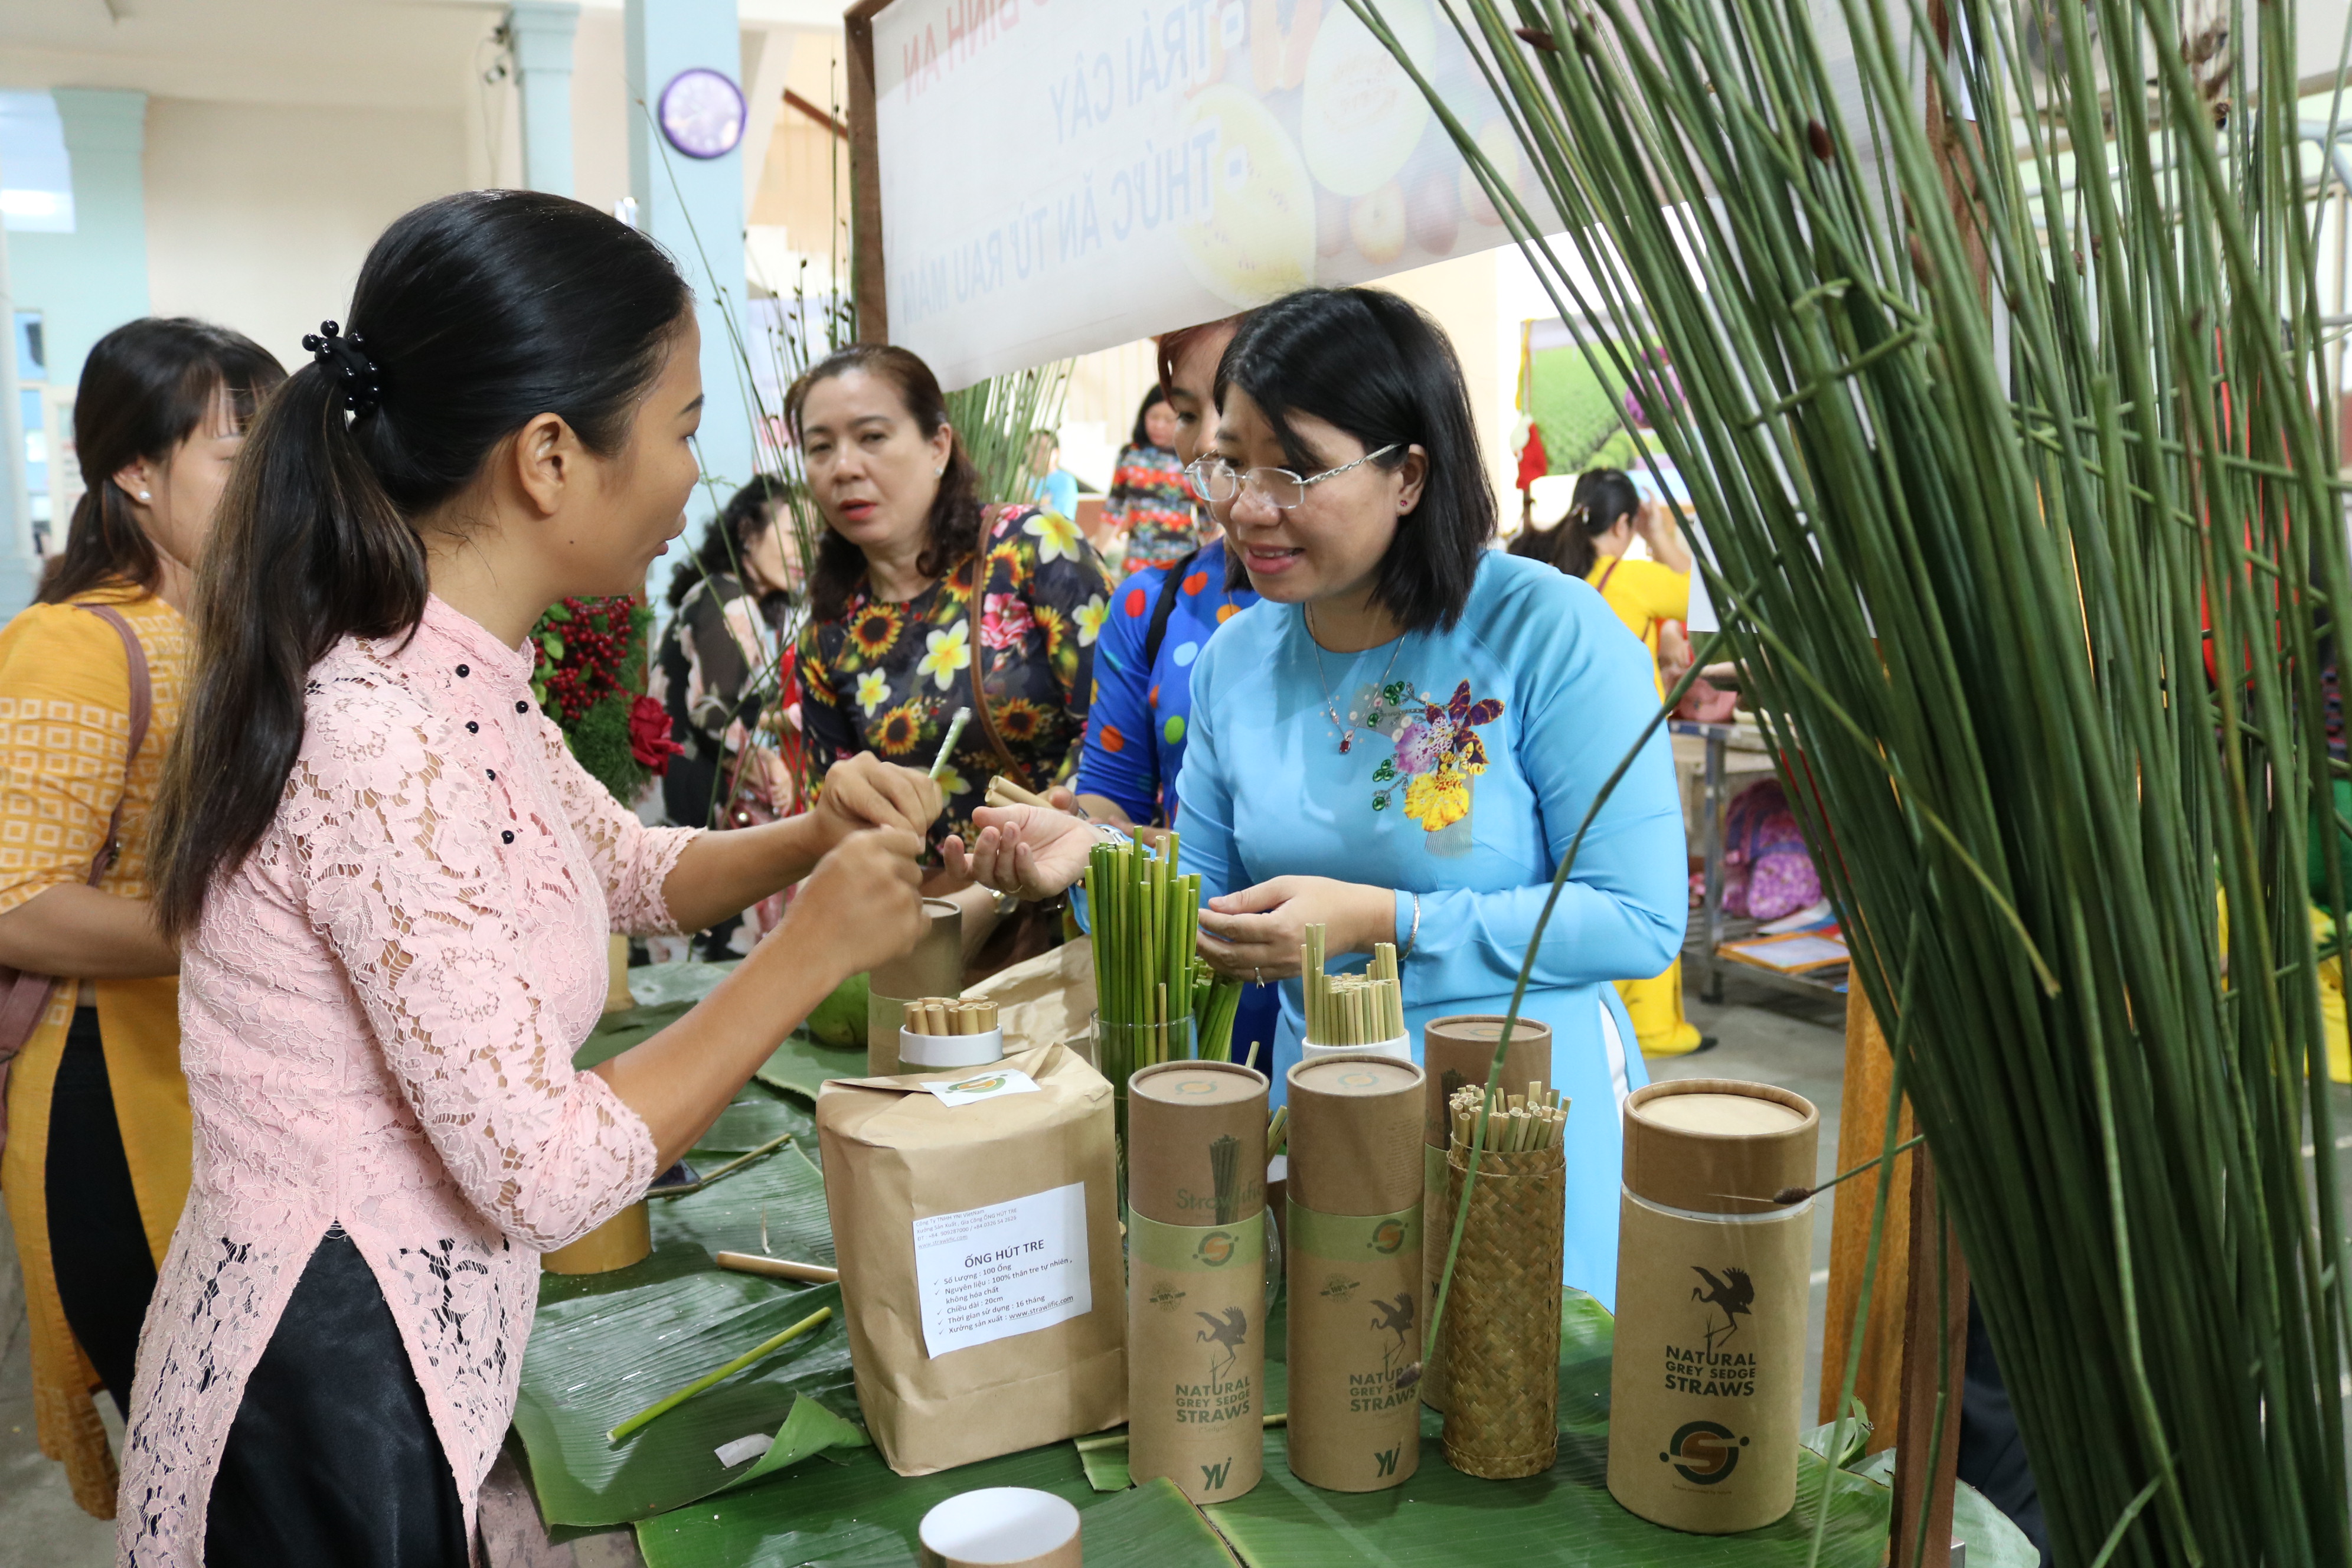 Bà Trần Thị Huyền Thanh (bìa phải) - Phó chủ tịch Hội LHPN TP.HCM - ghé thăm và tìm hiểu các sản phẩm thân thiện với môi trường trong phiên chợ. 